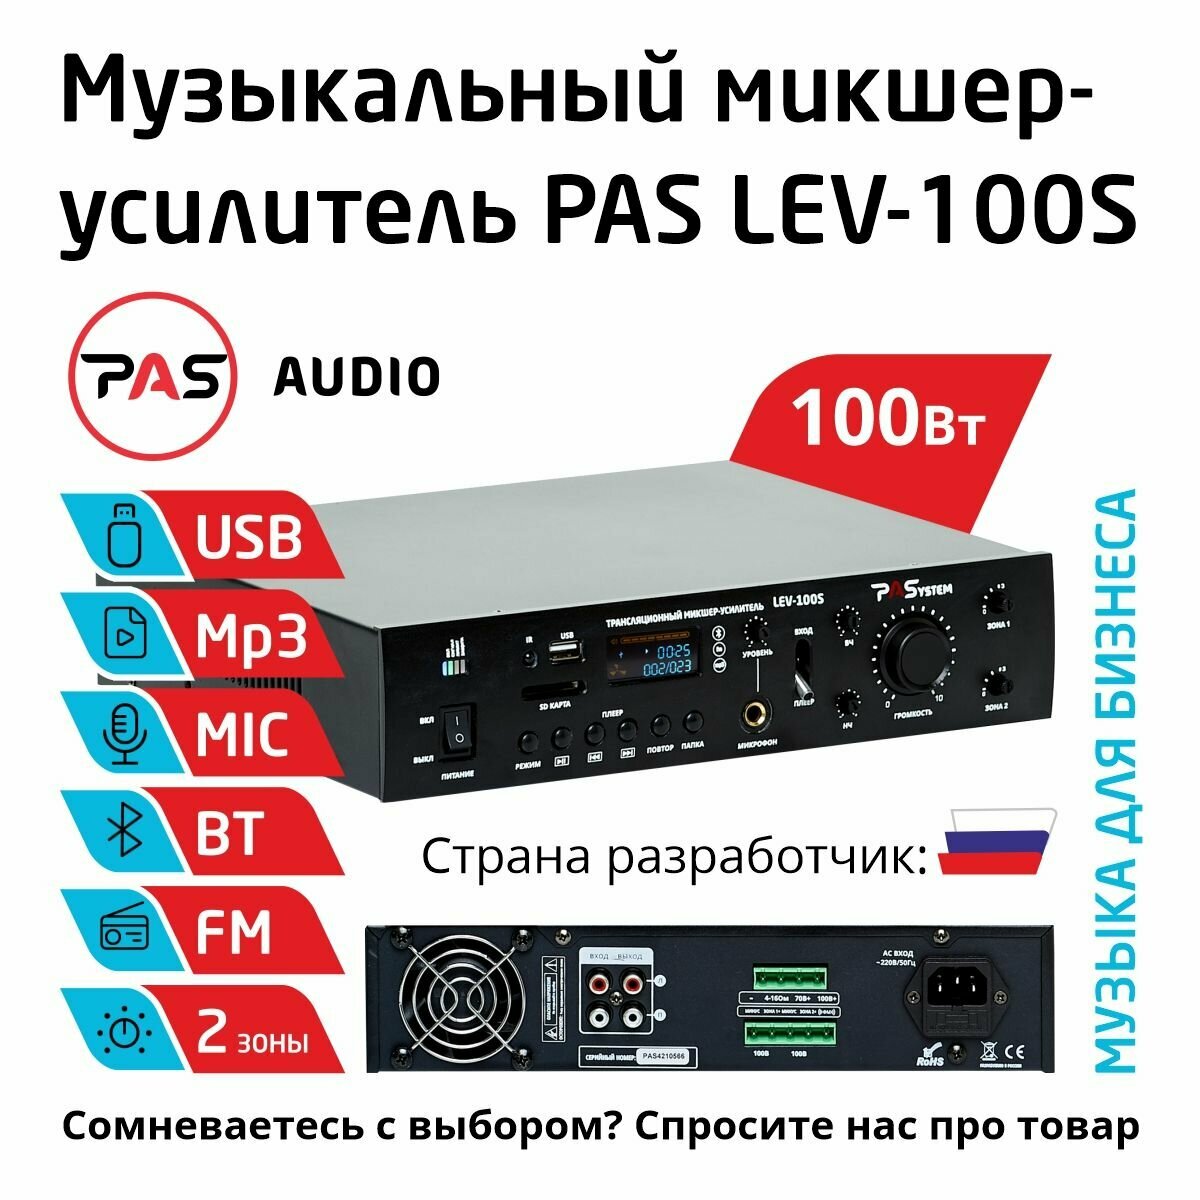 Музыкальный трансляционный микшер-усилитель 100 Вт 2 зоны с MP3-BT-FM плеером PASystem LEV-100S